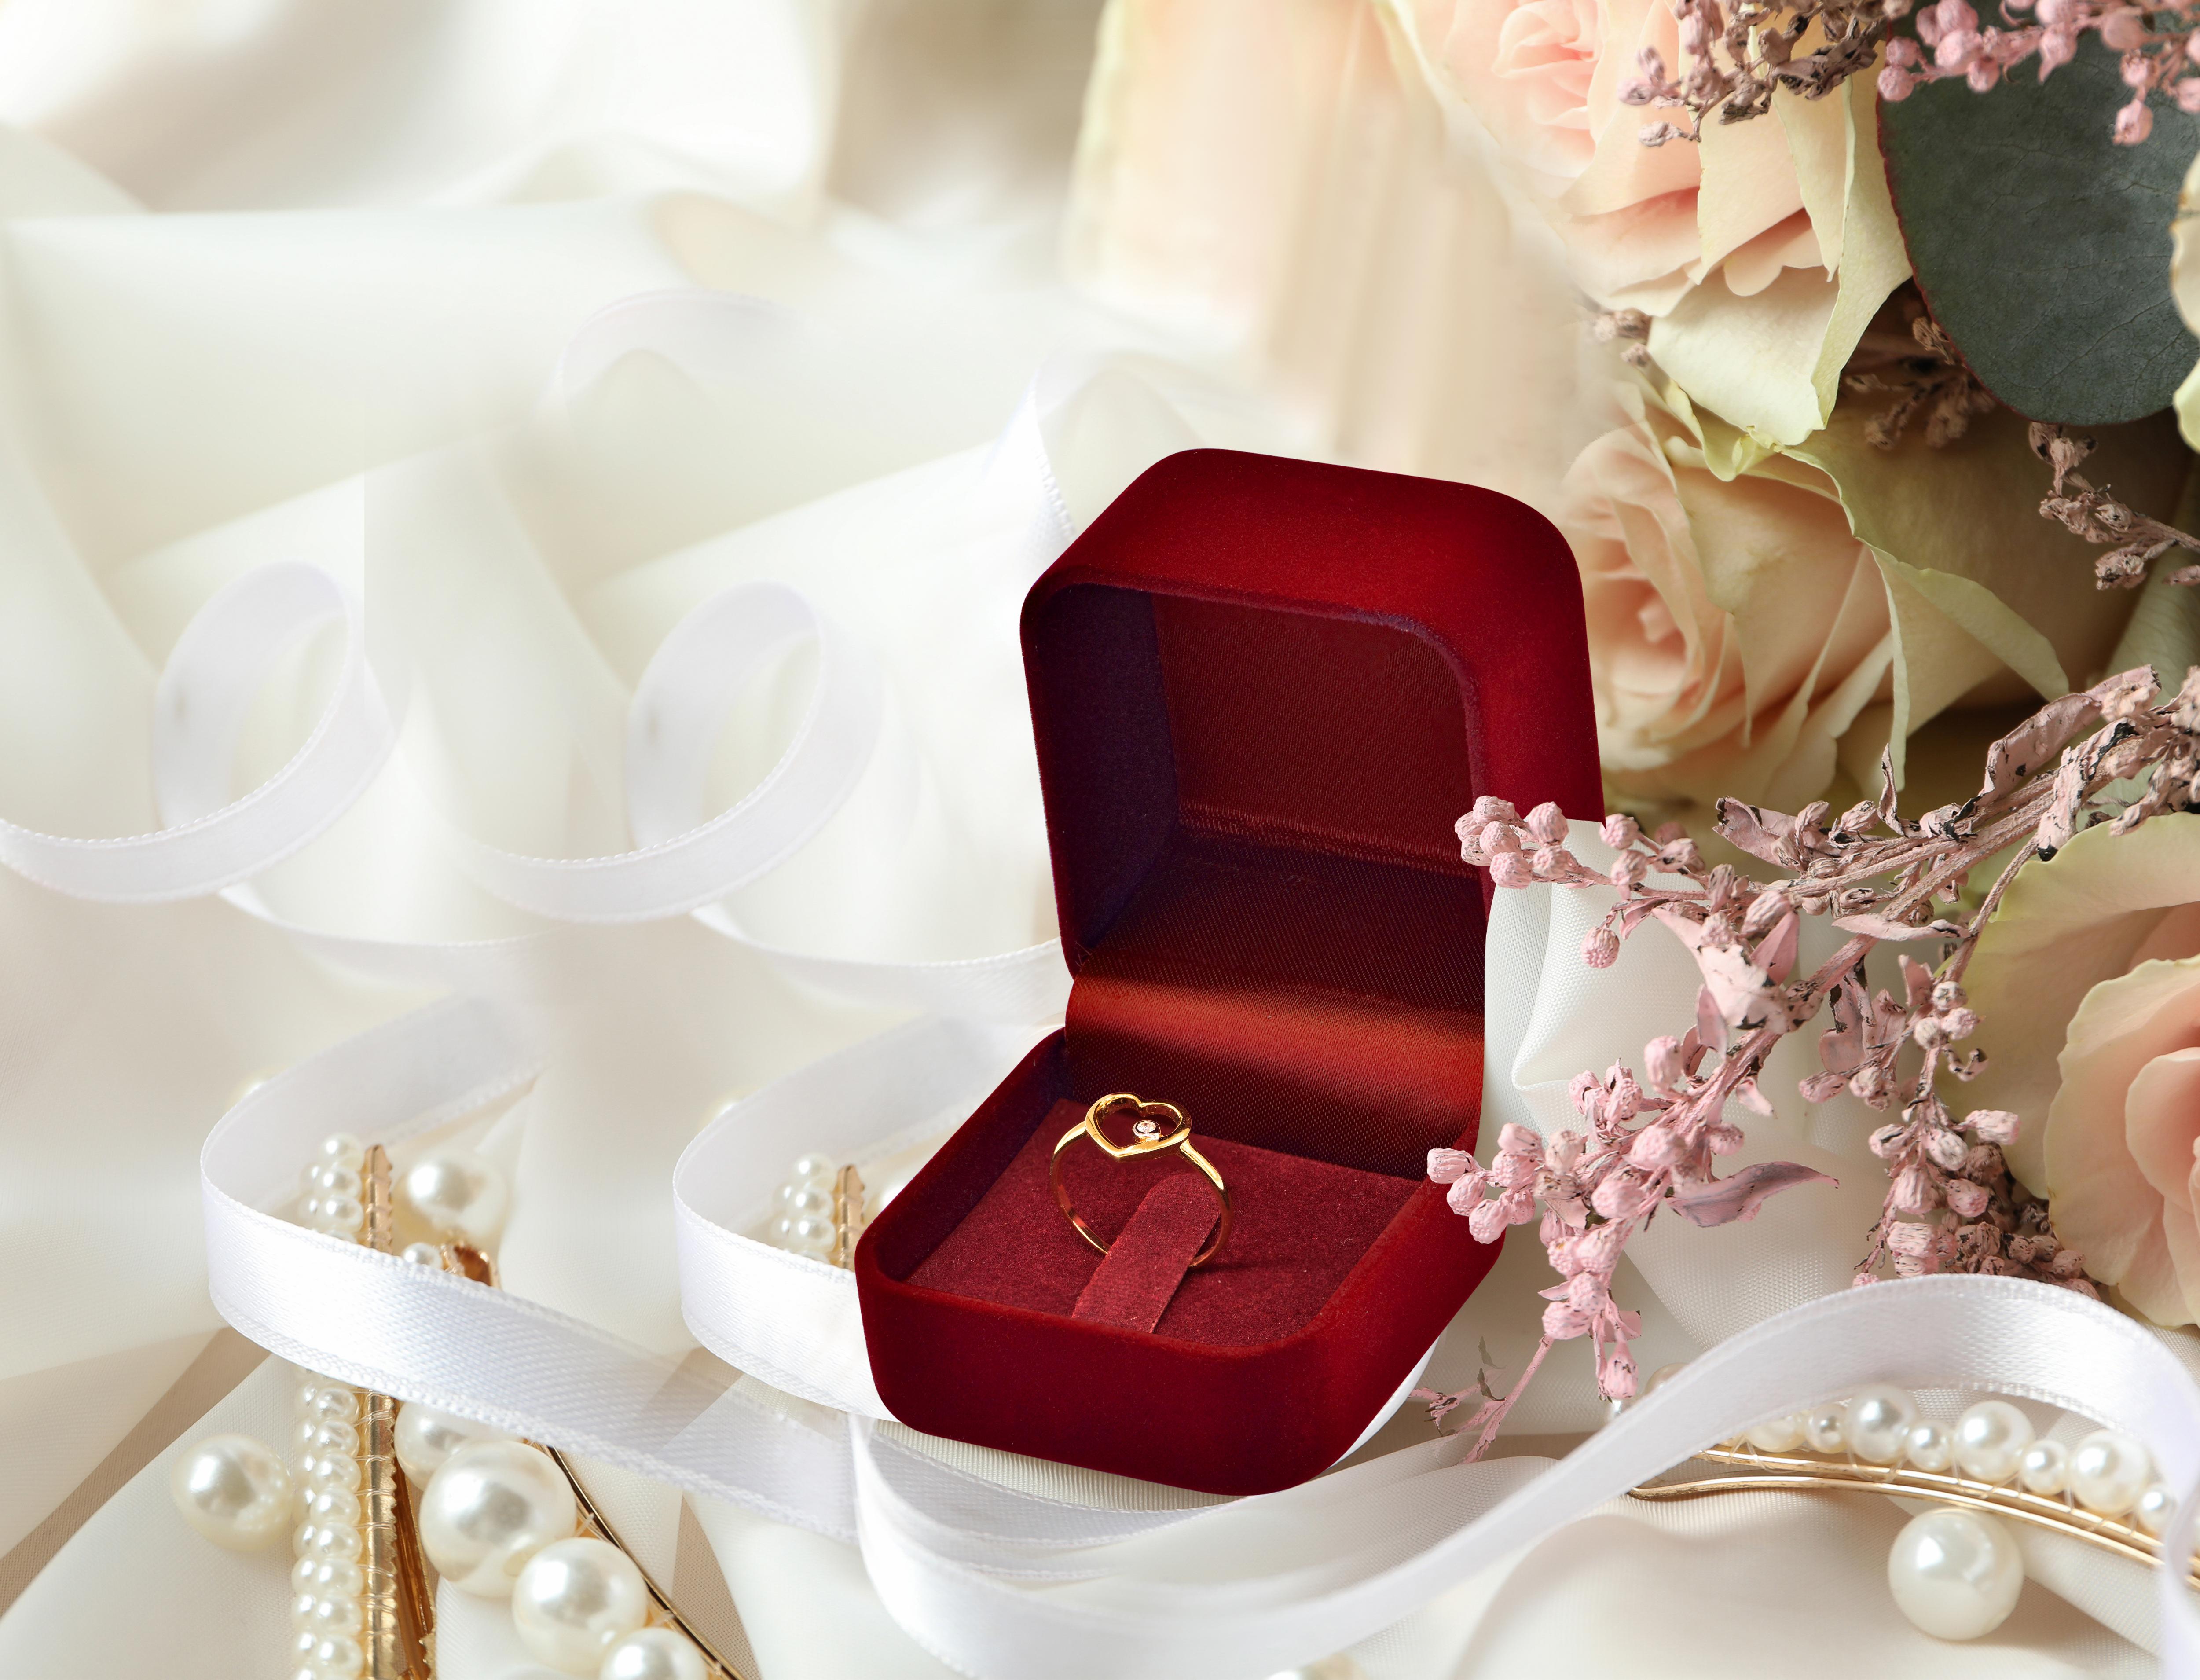 For Sale:  18k Rose Gold Diamond Heart Ring Minimal Heart Ring with Bezel Set Diamond 17